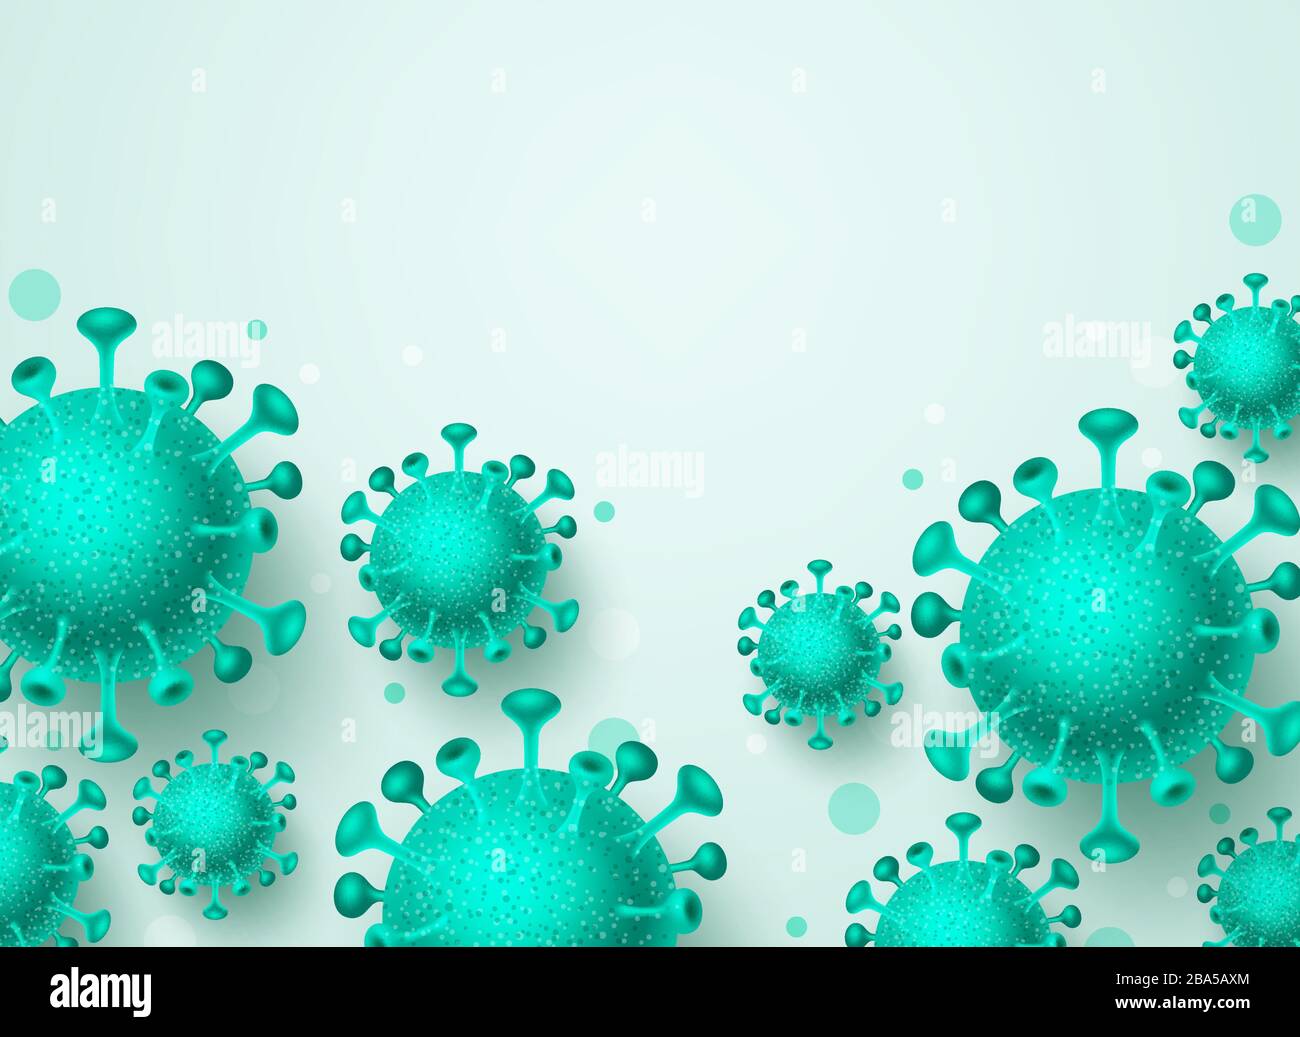 Hintergrundvorlage für Corona-Virusvektor. Covid-19-Virus mit Platz für Texthintergrund des globalen NCOV-Ausbruchs und des tödlichen Virus der Weltpandemic. Stock Vektor